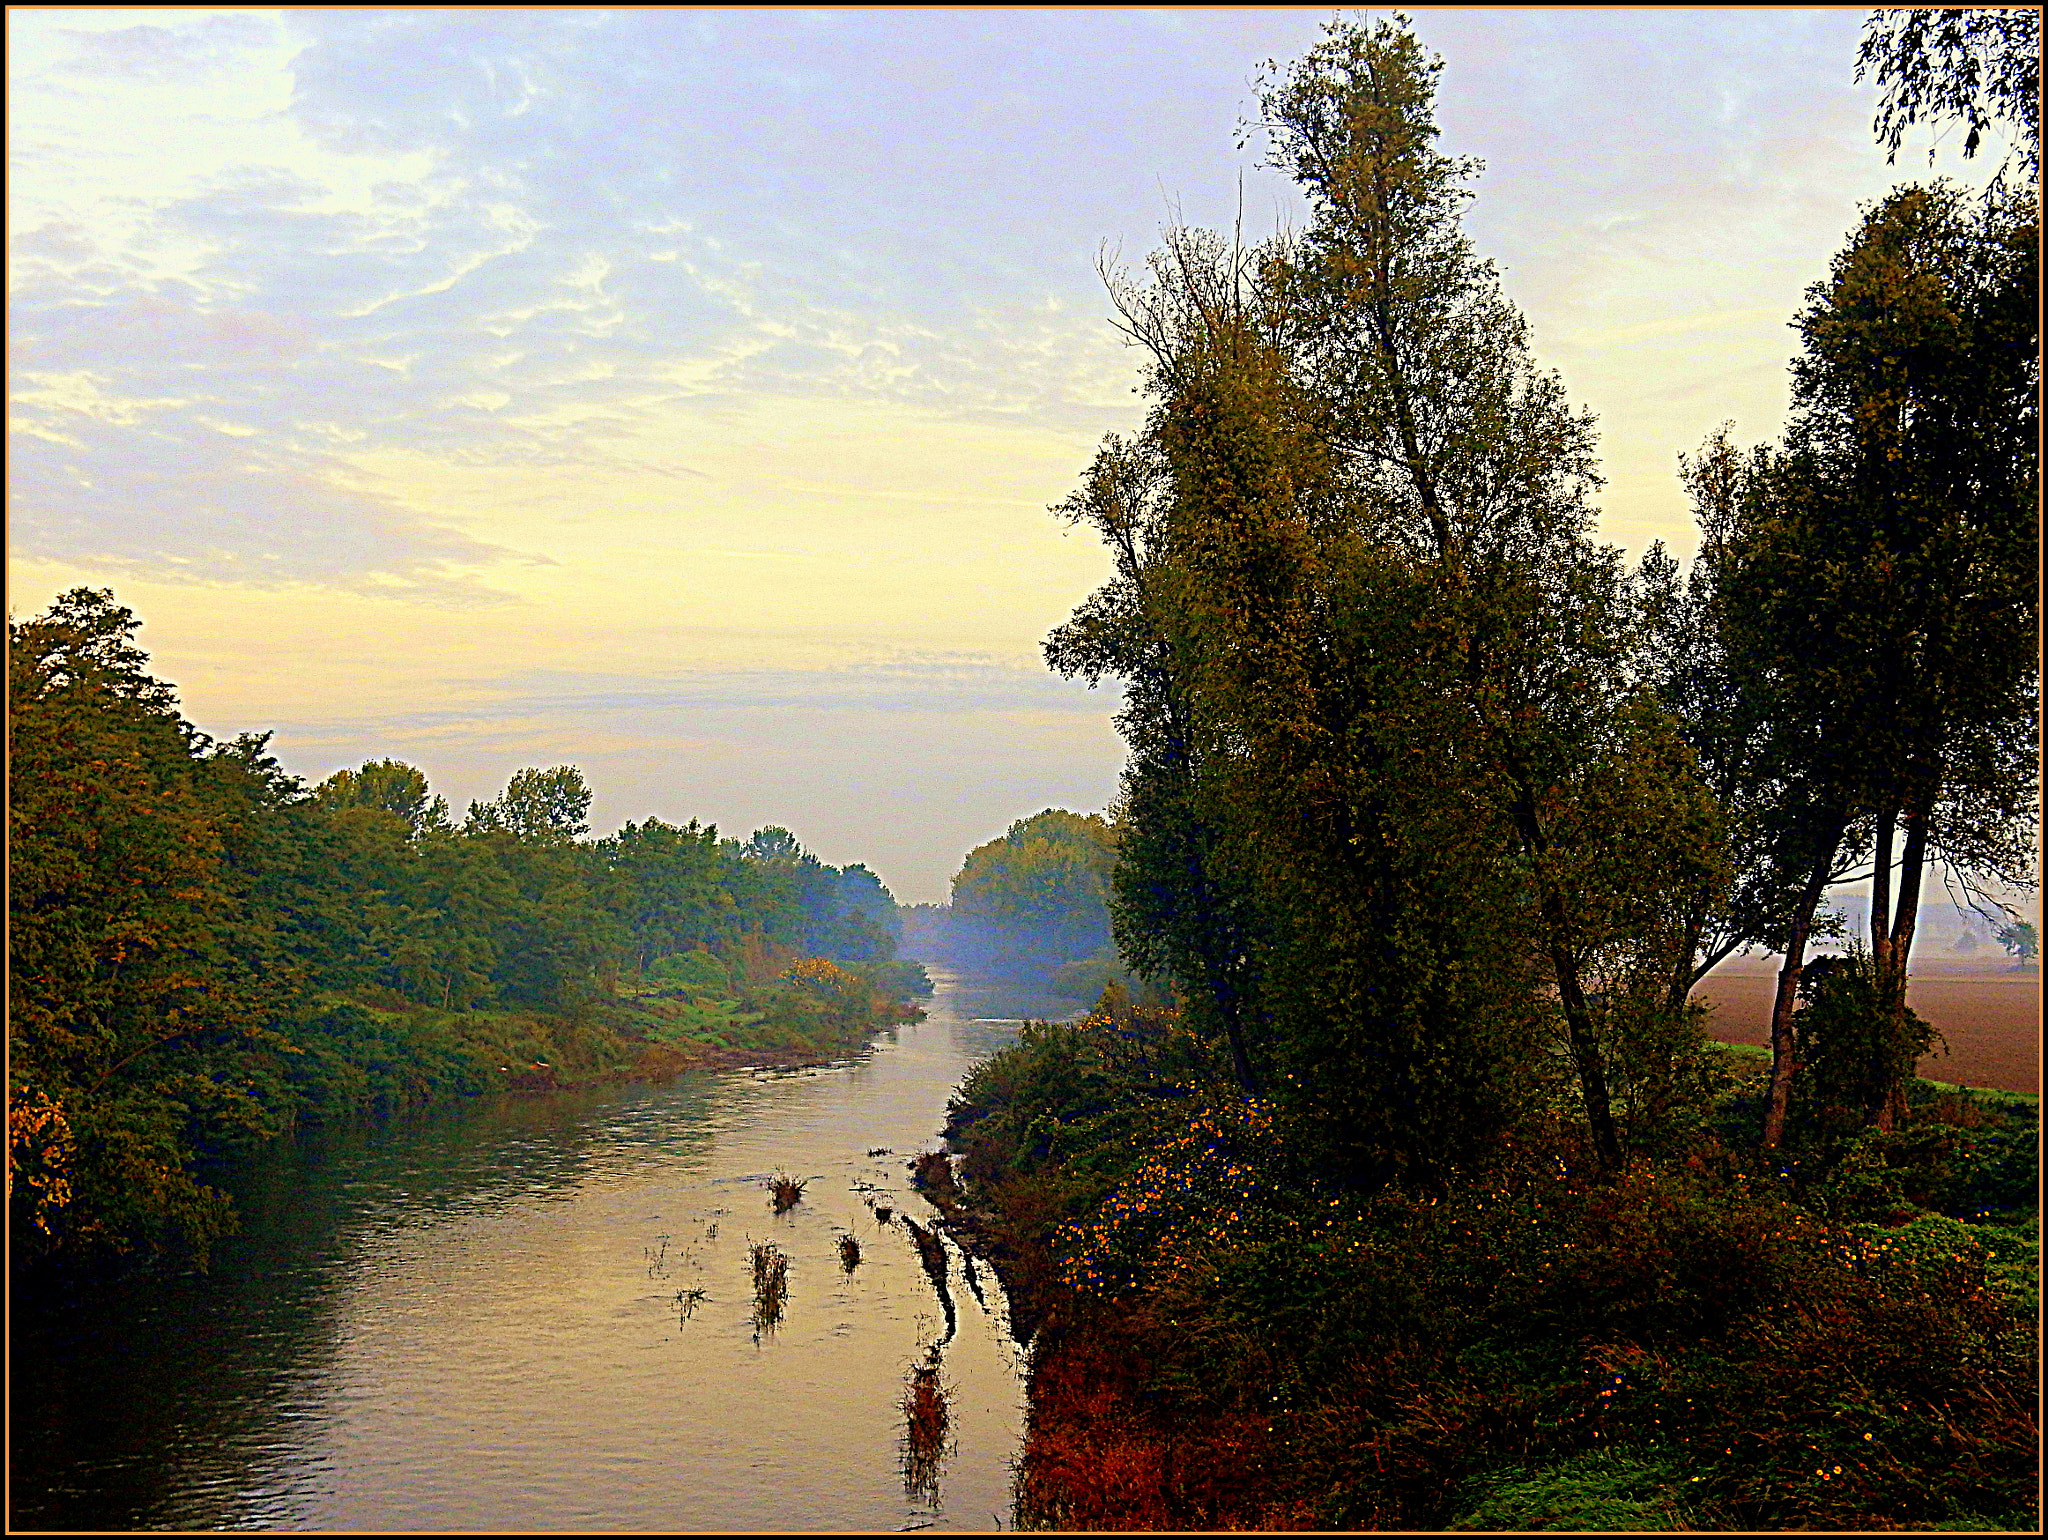 Nikon Coolpix S9700 sample photo. Autunno, è mattina presto lungo il fiume chiese. photography